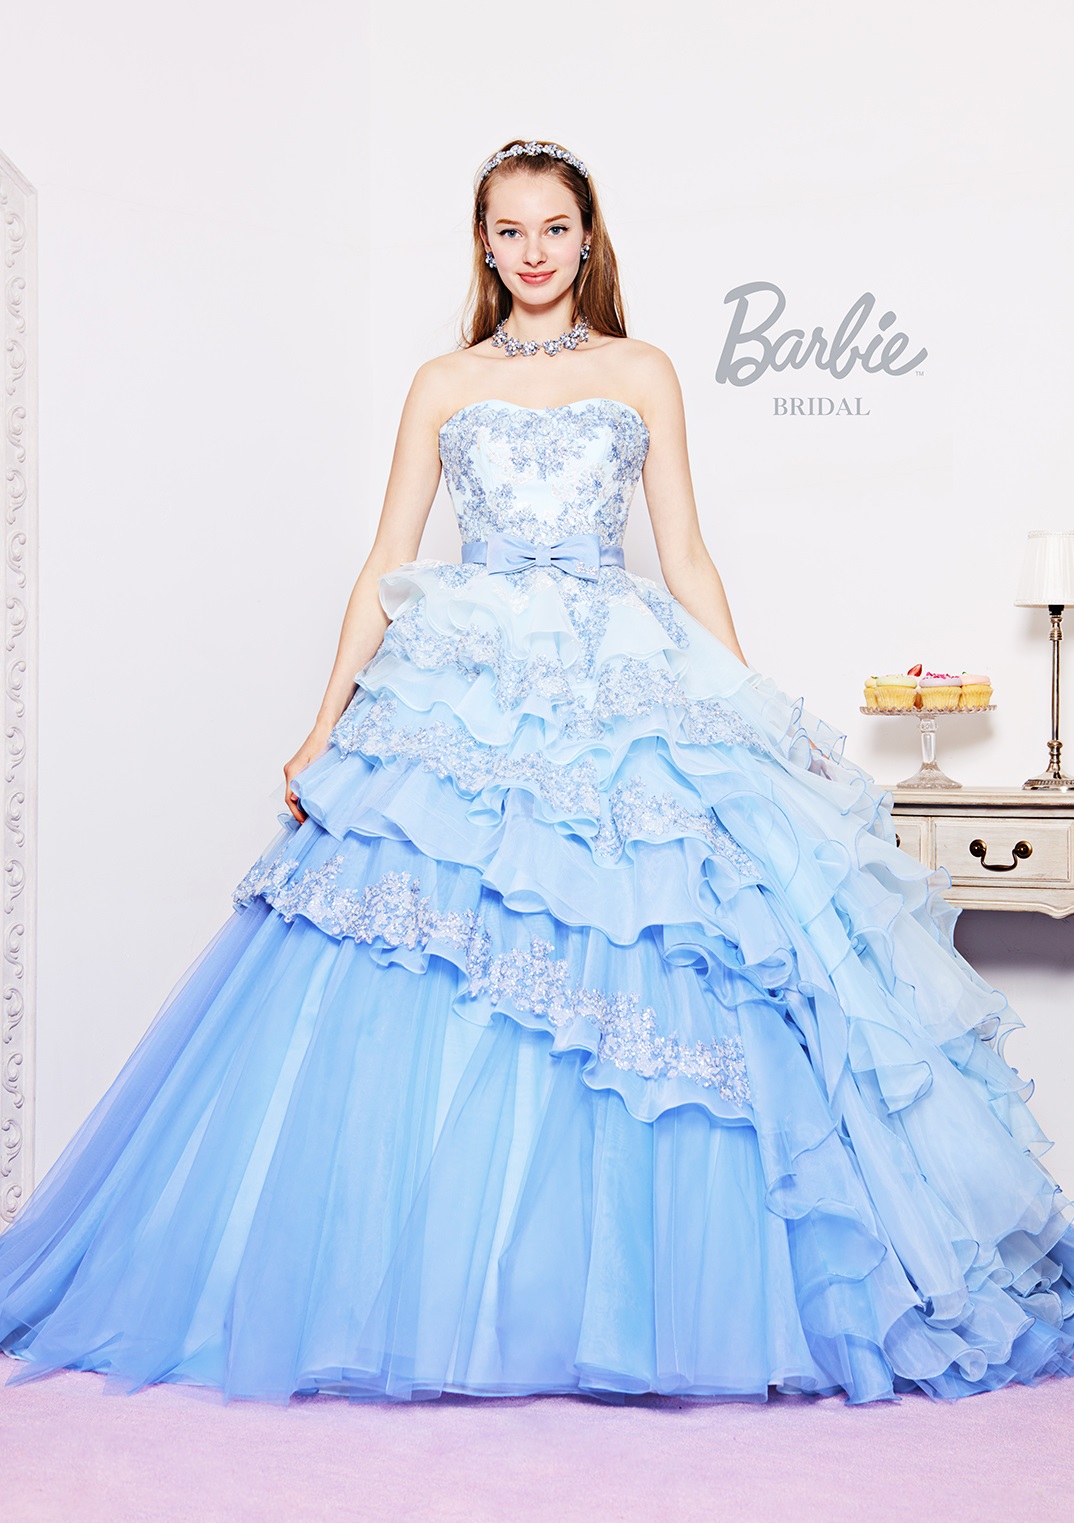 カラードレス Barbie ウェディングドレス - ウェディング